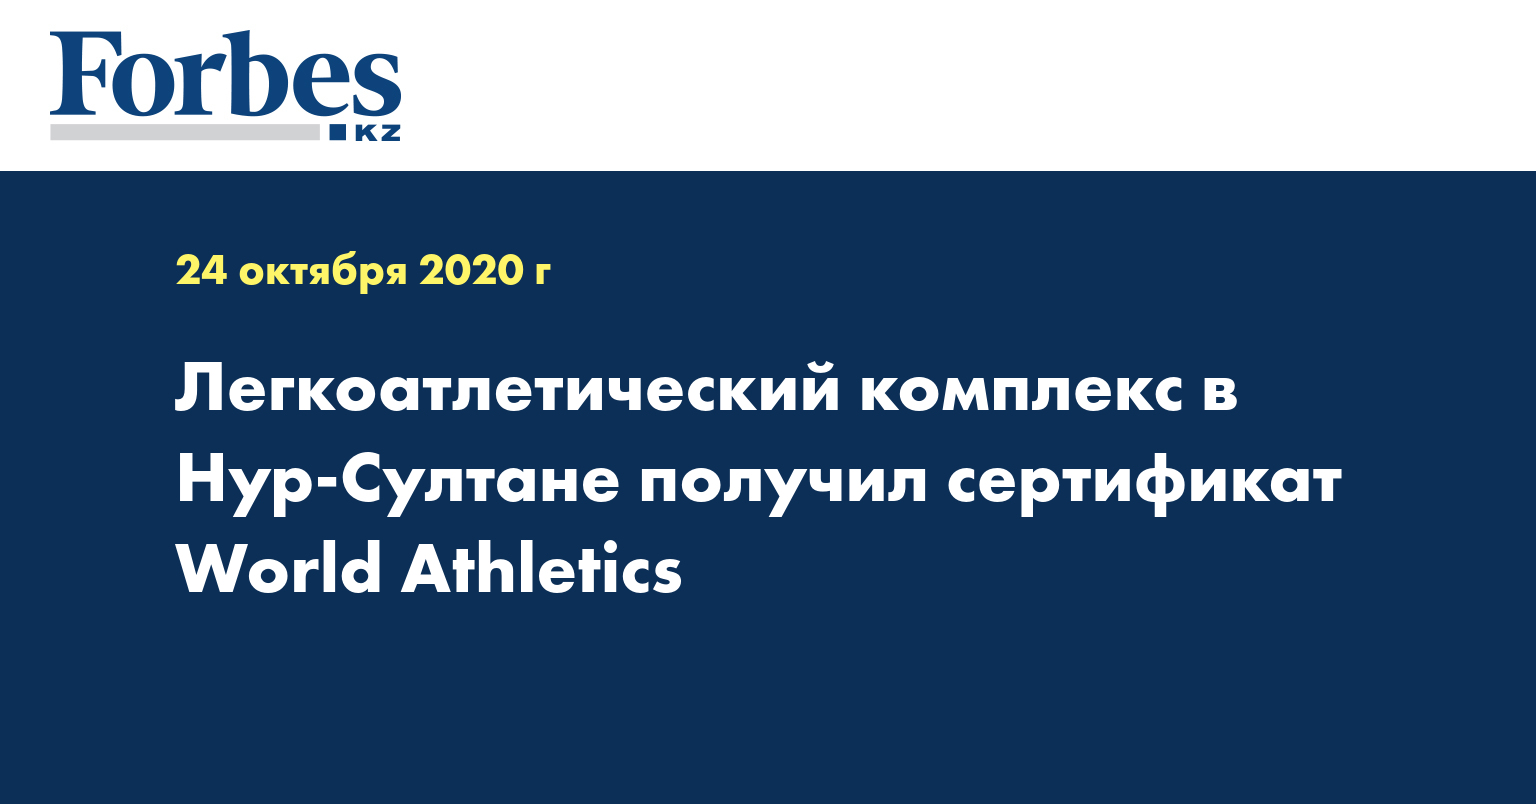 Легкоатлетический комплекс в Нур-Султане получил сертификат World Athletics